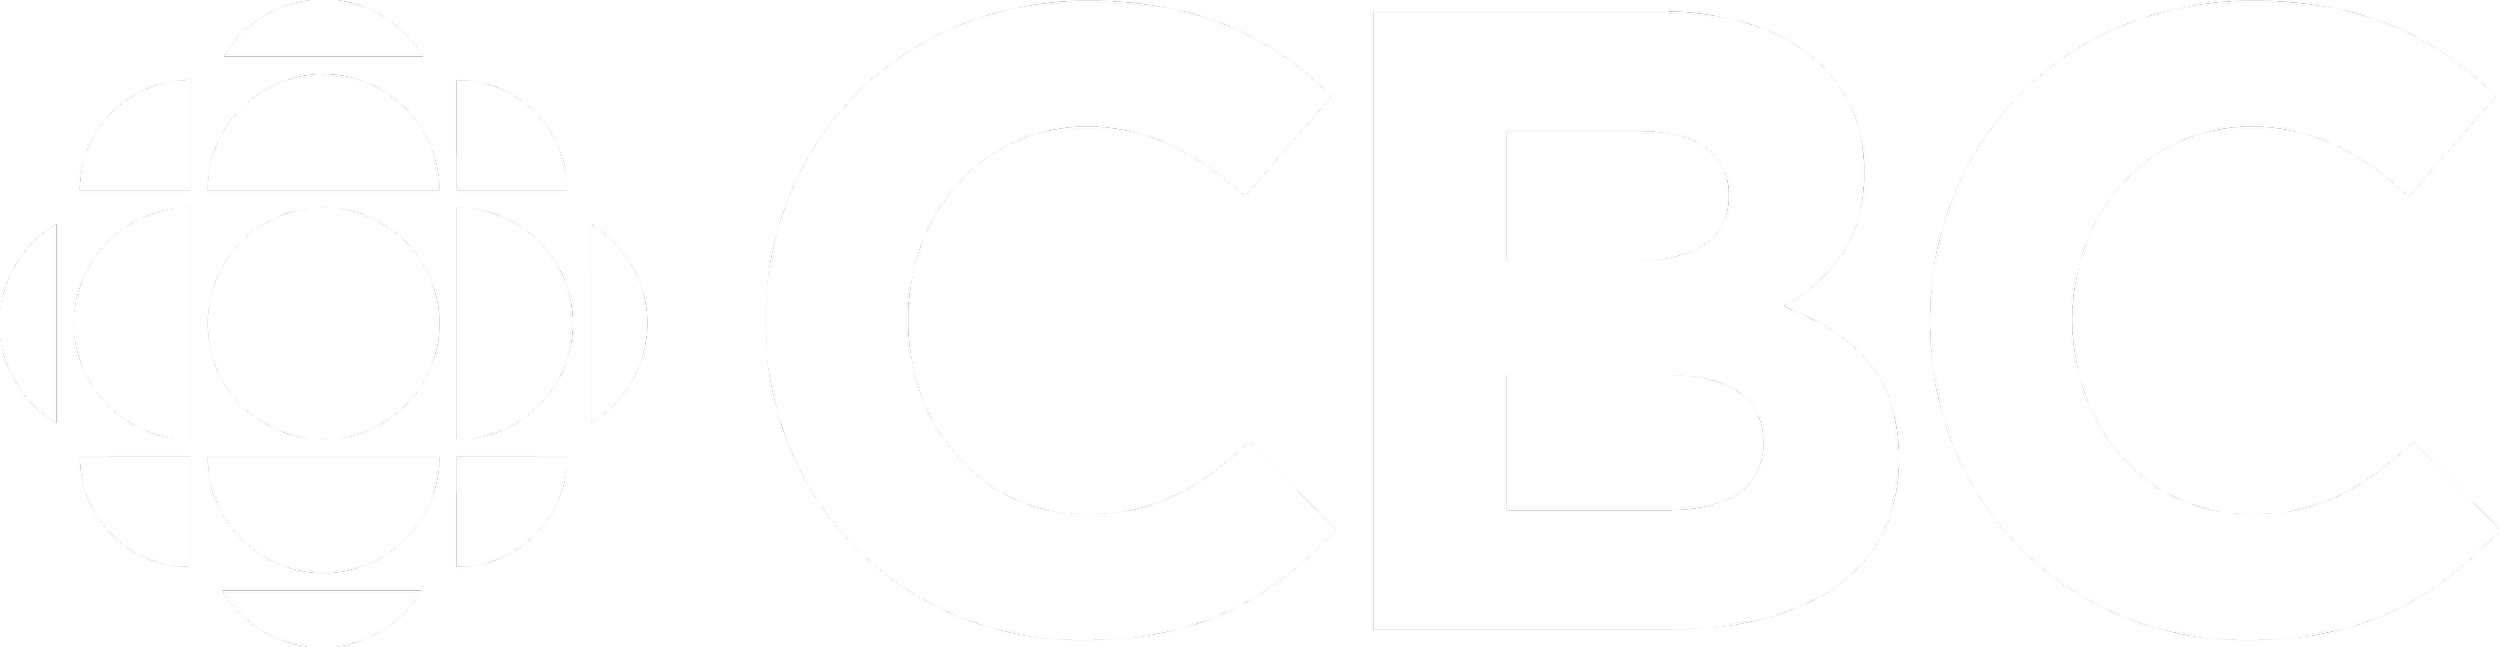 CBC_Logo_- Zest Media Productions.png